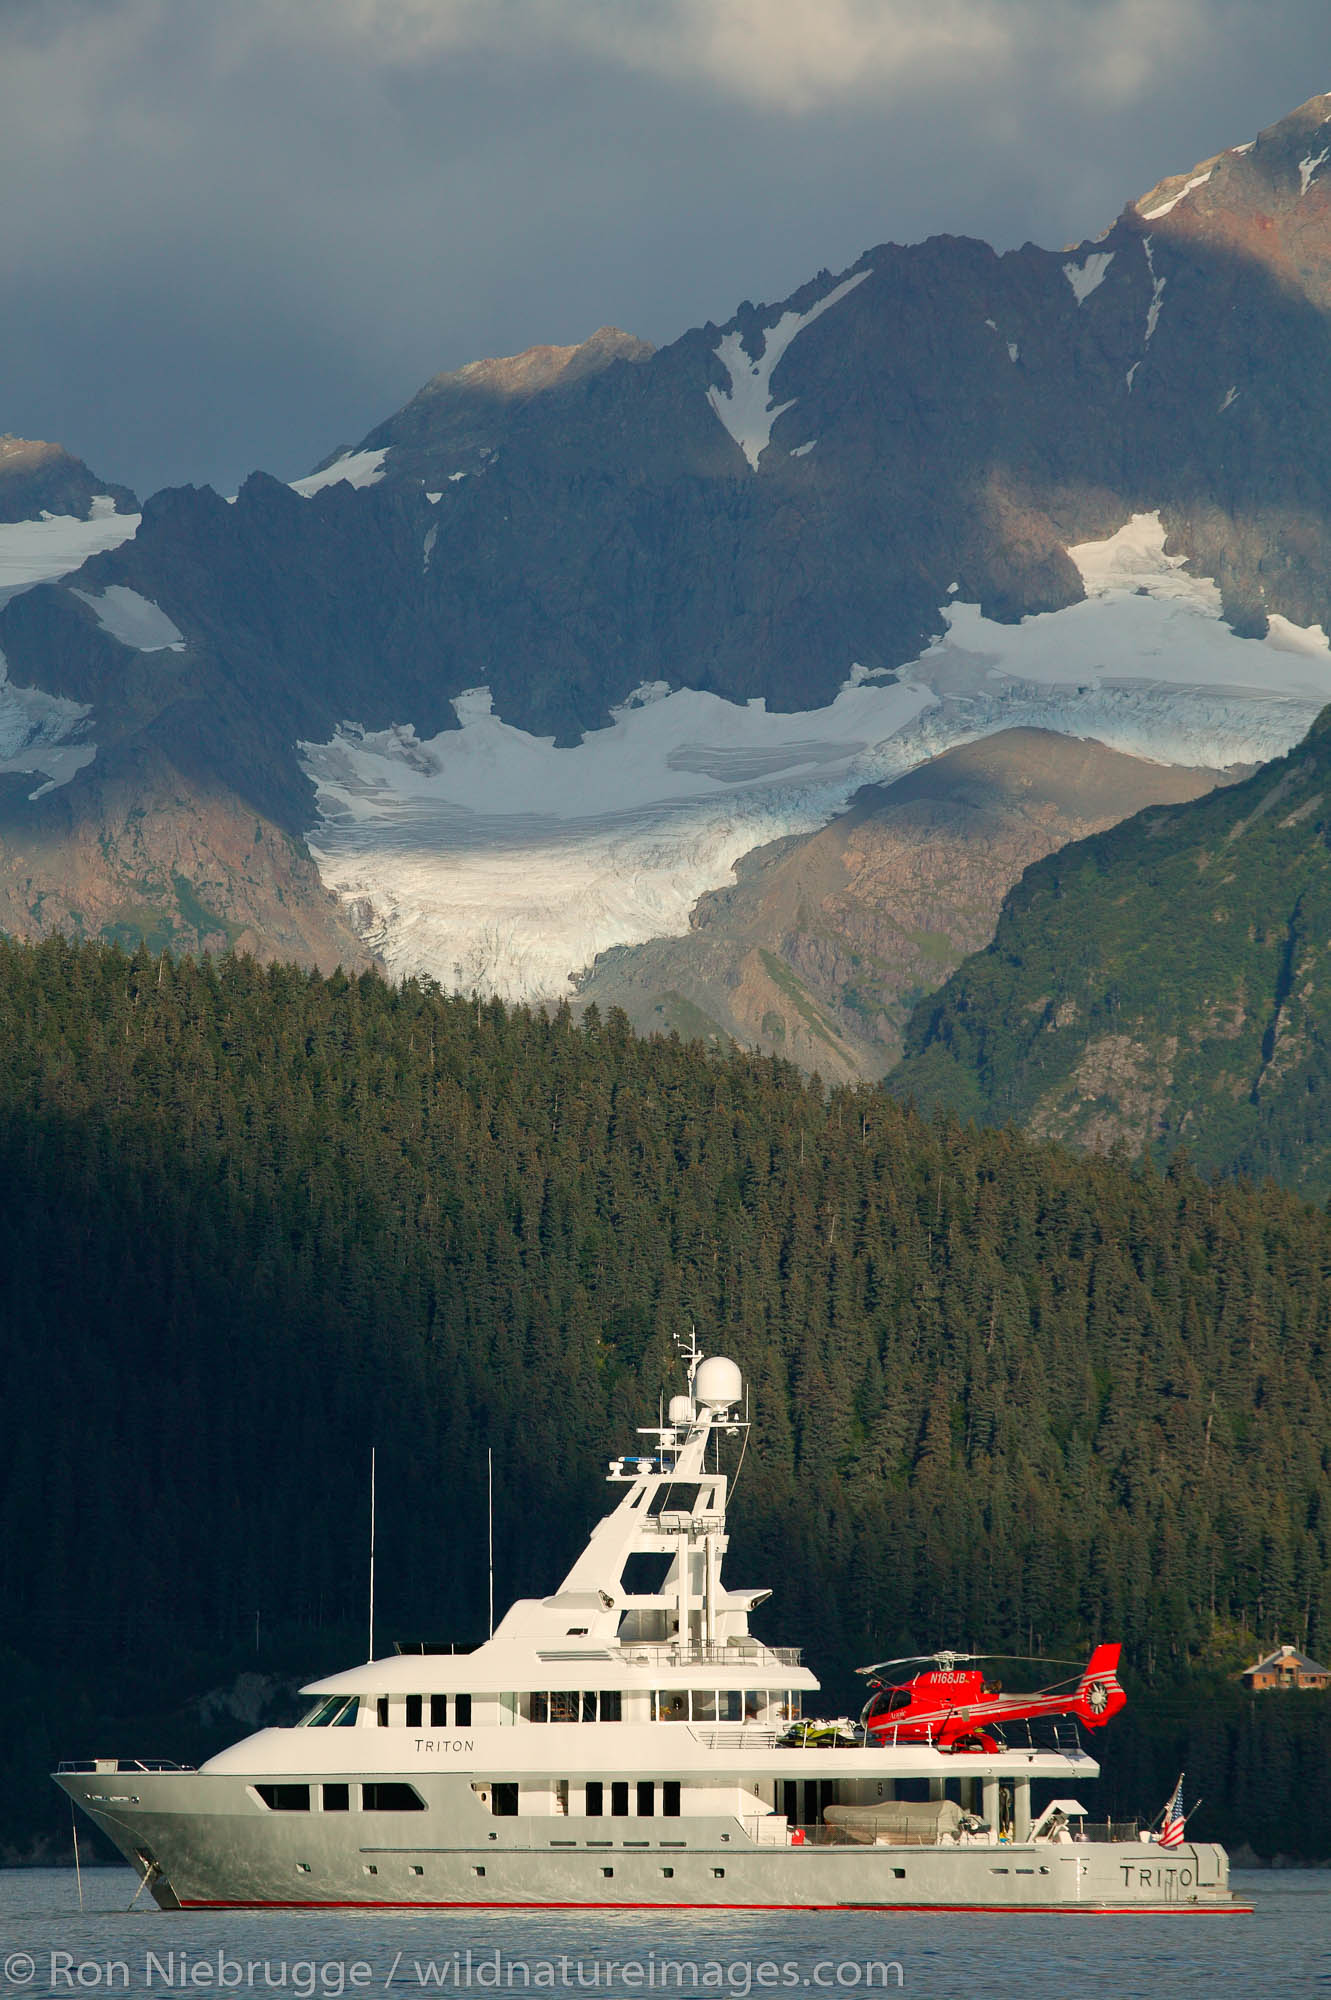 The yacht Triton in Resurrection Bay, Seward, Alaska.